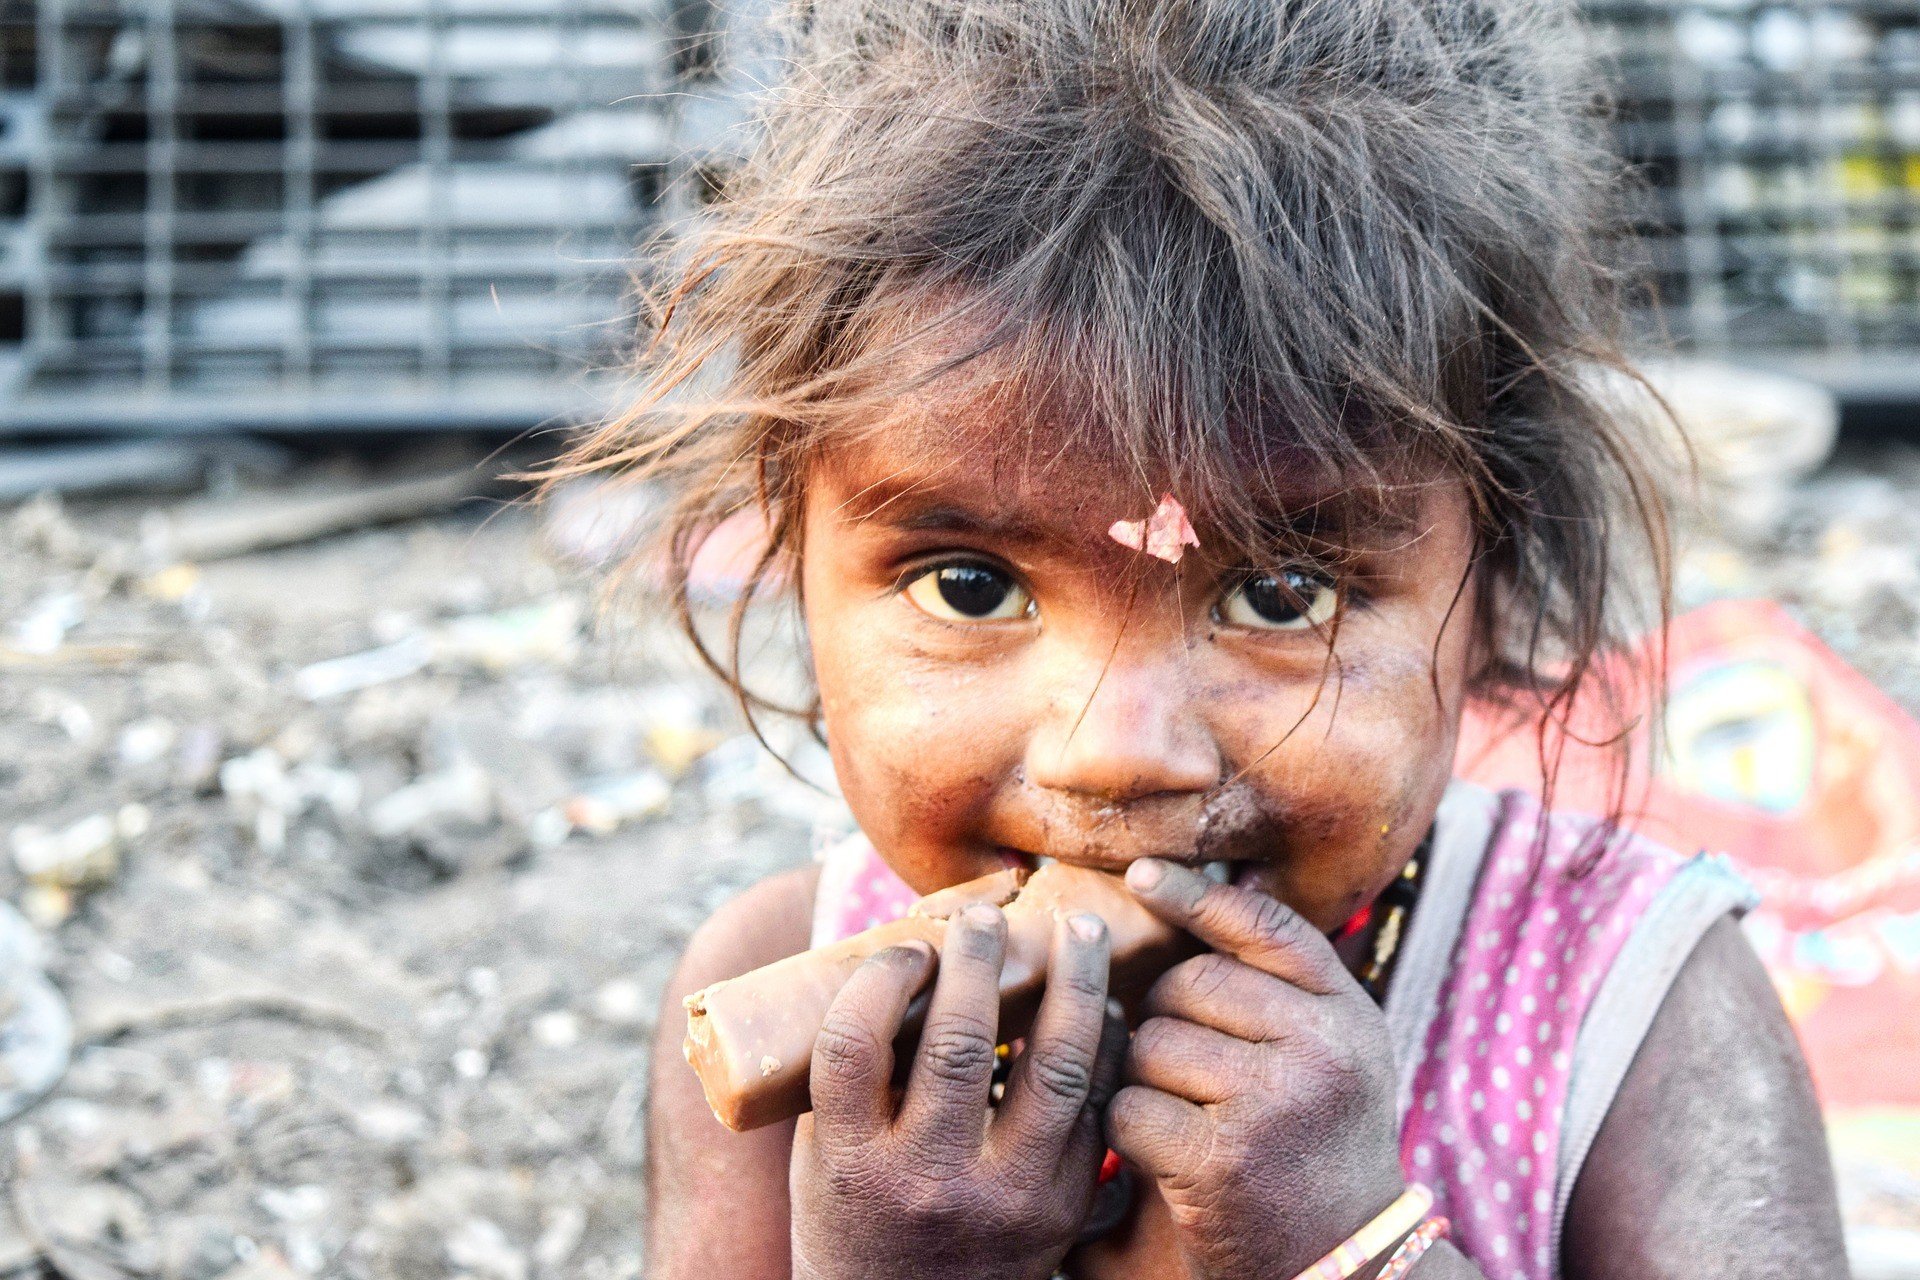 ООН: голод грозит еще 16 странам